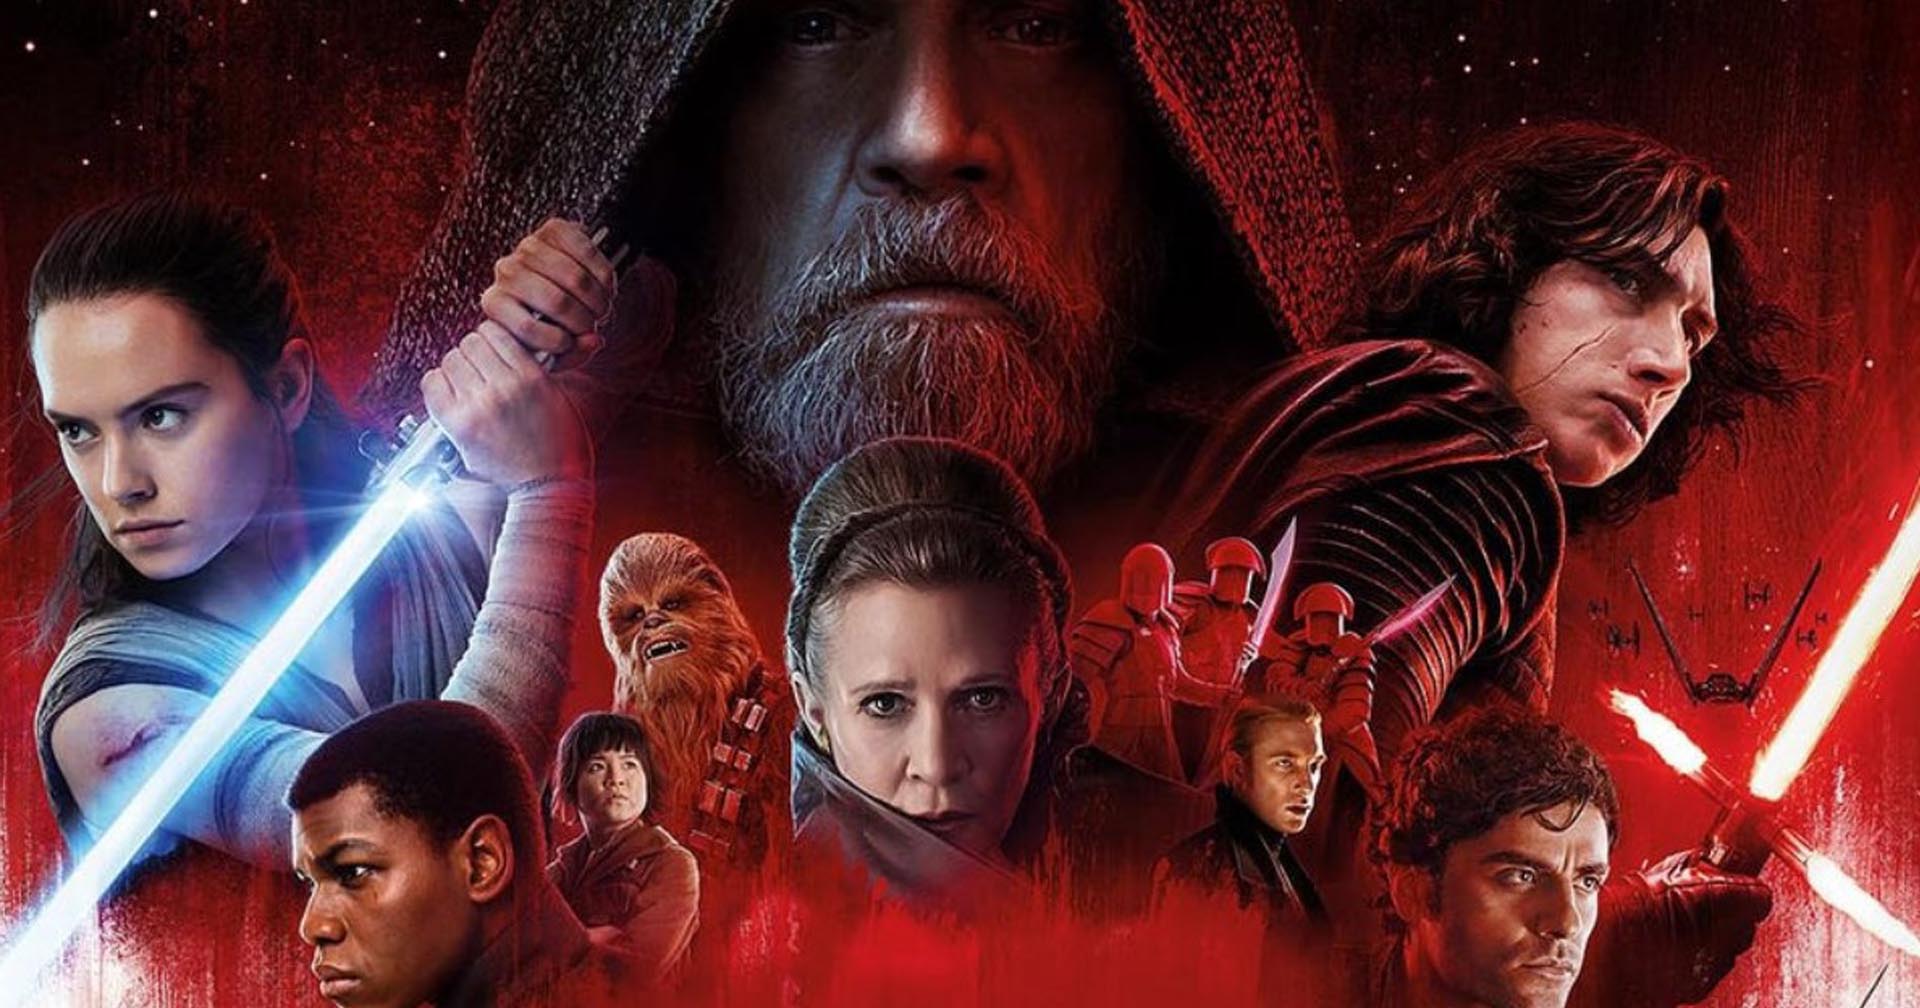 ผู้กำกับ ‘The Last Jedi’ เผยความในใจ อยากกลับมาทำหนังในจักรวาล Star Wars อีกครั้ง